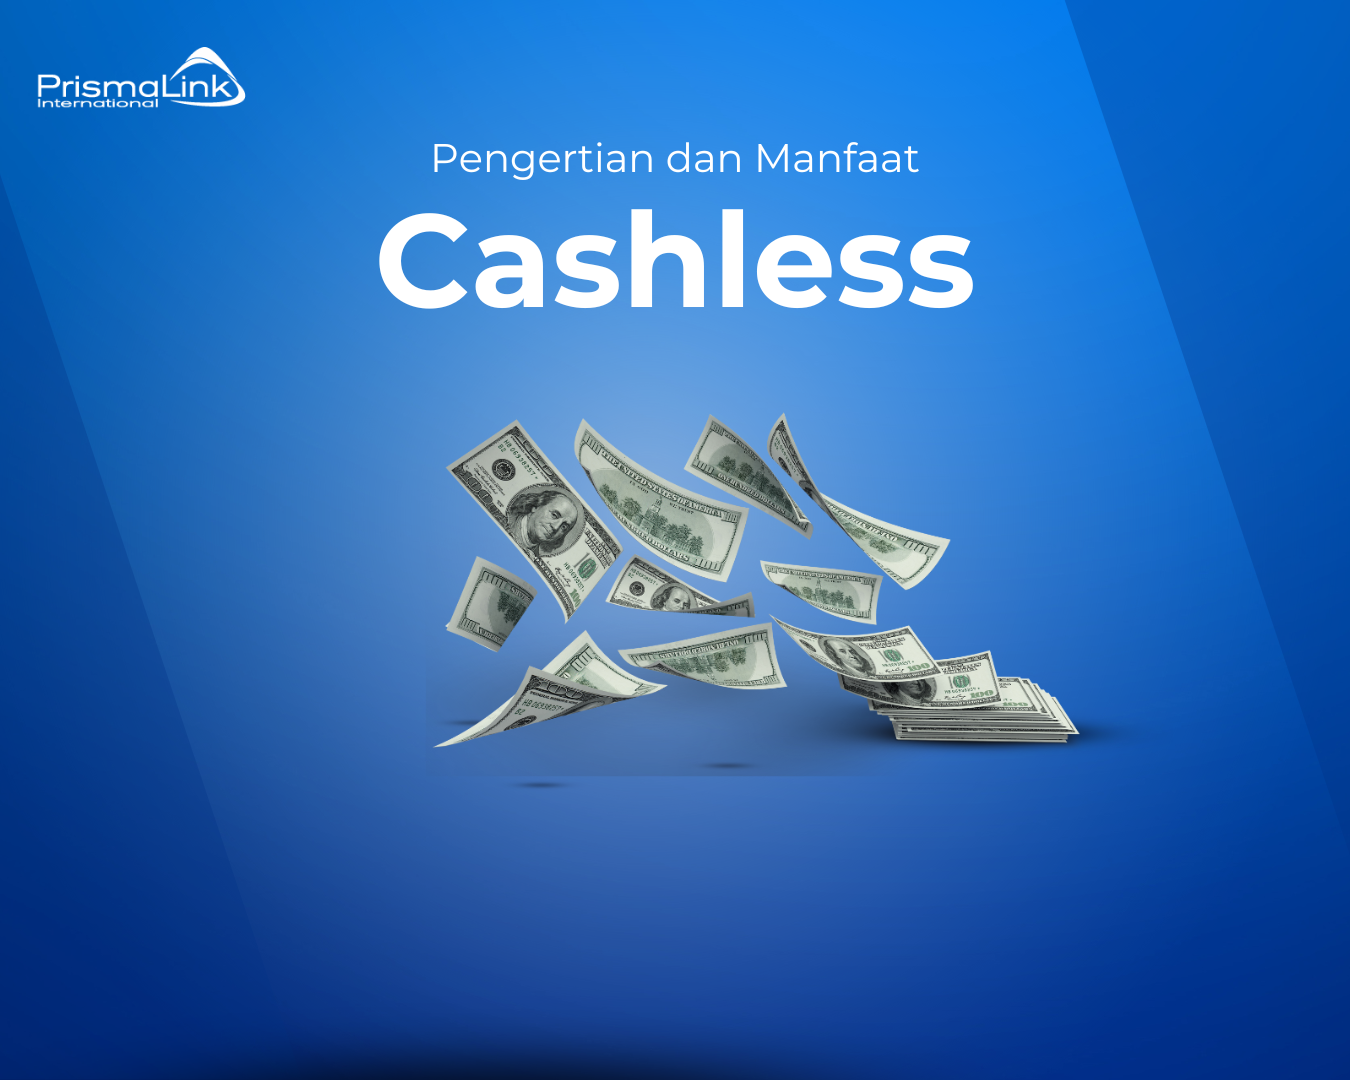 cashless